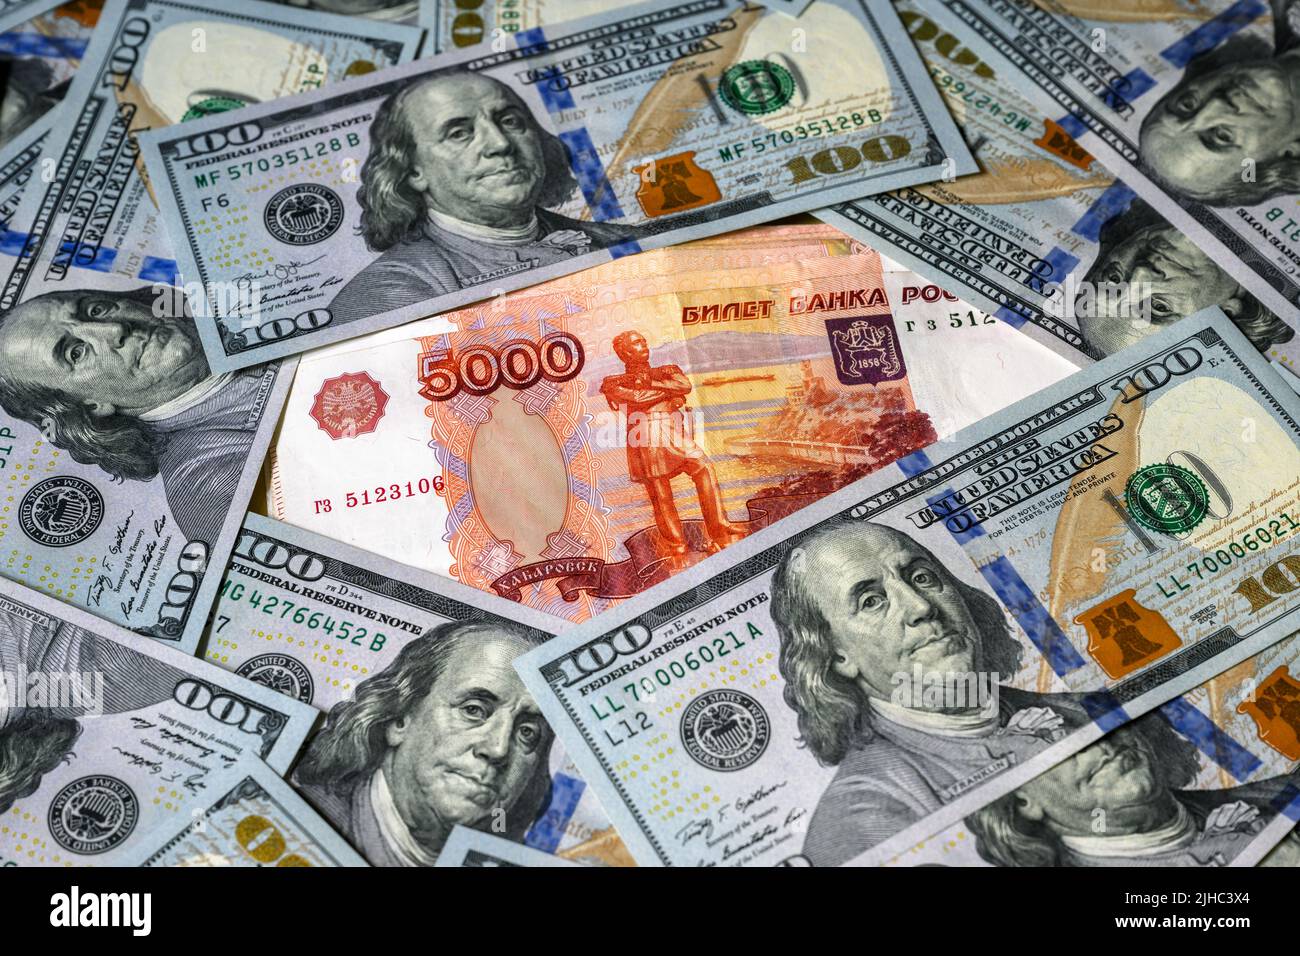 Ruble Money russo vs dollaro americano, ruble banconota tra dollari. Concetto di sanzioni, moneta forte, confronto, economia della Russia e degli Stati Uniti Foto Stock